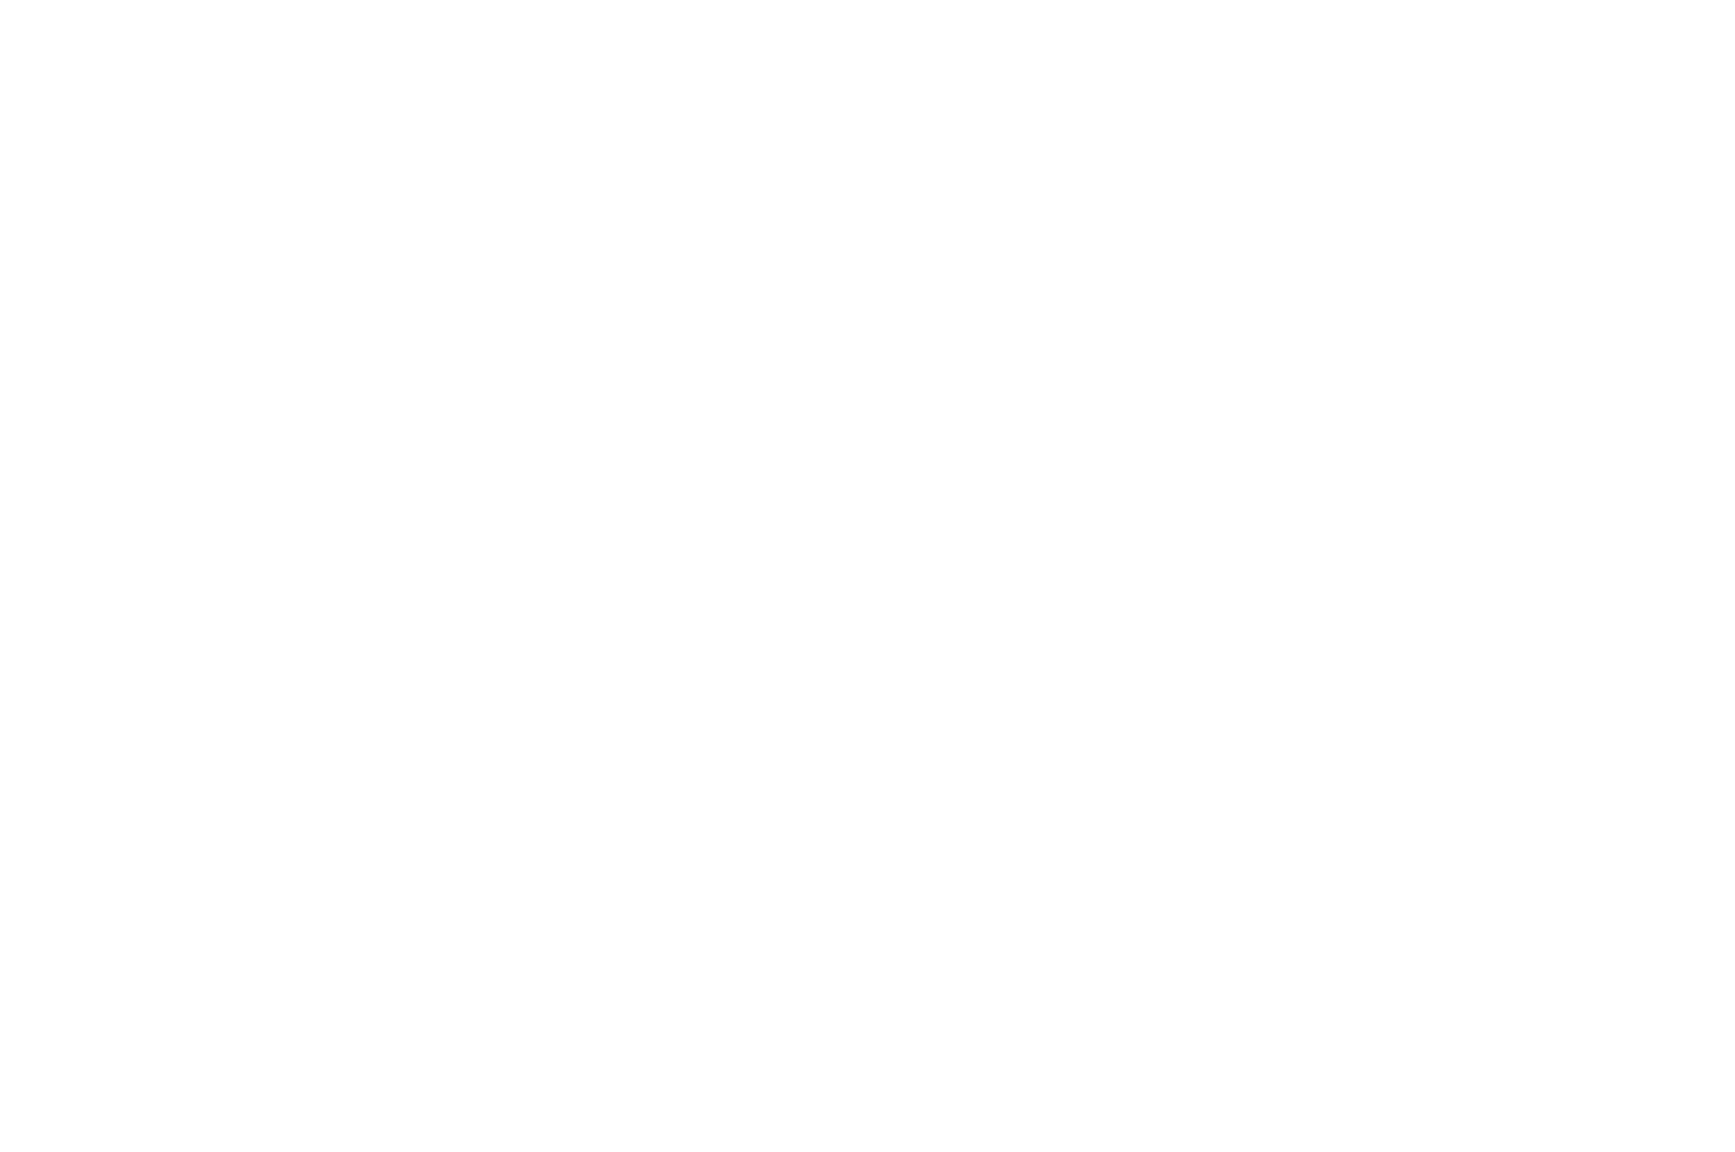 BEST MUSIC VIDEO - Paris Film Festival - 2021